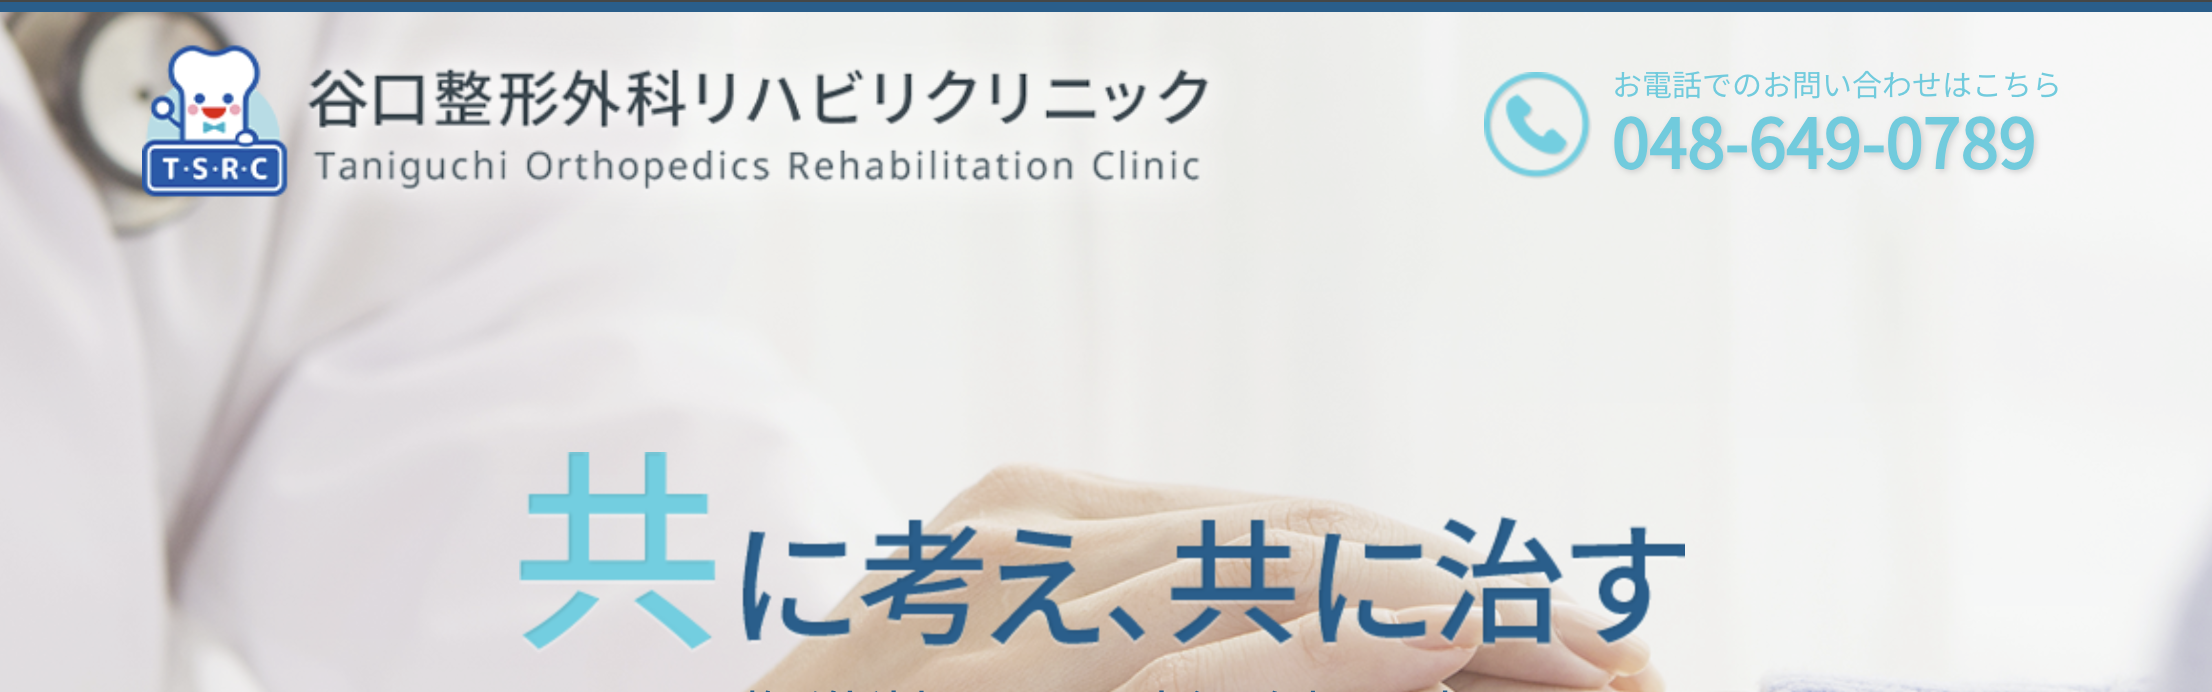 埼玉県で評判の整形外科クリニックおすすめ10選 谷口整形外科リハビリクリニック